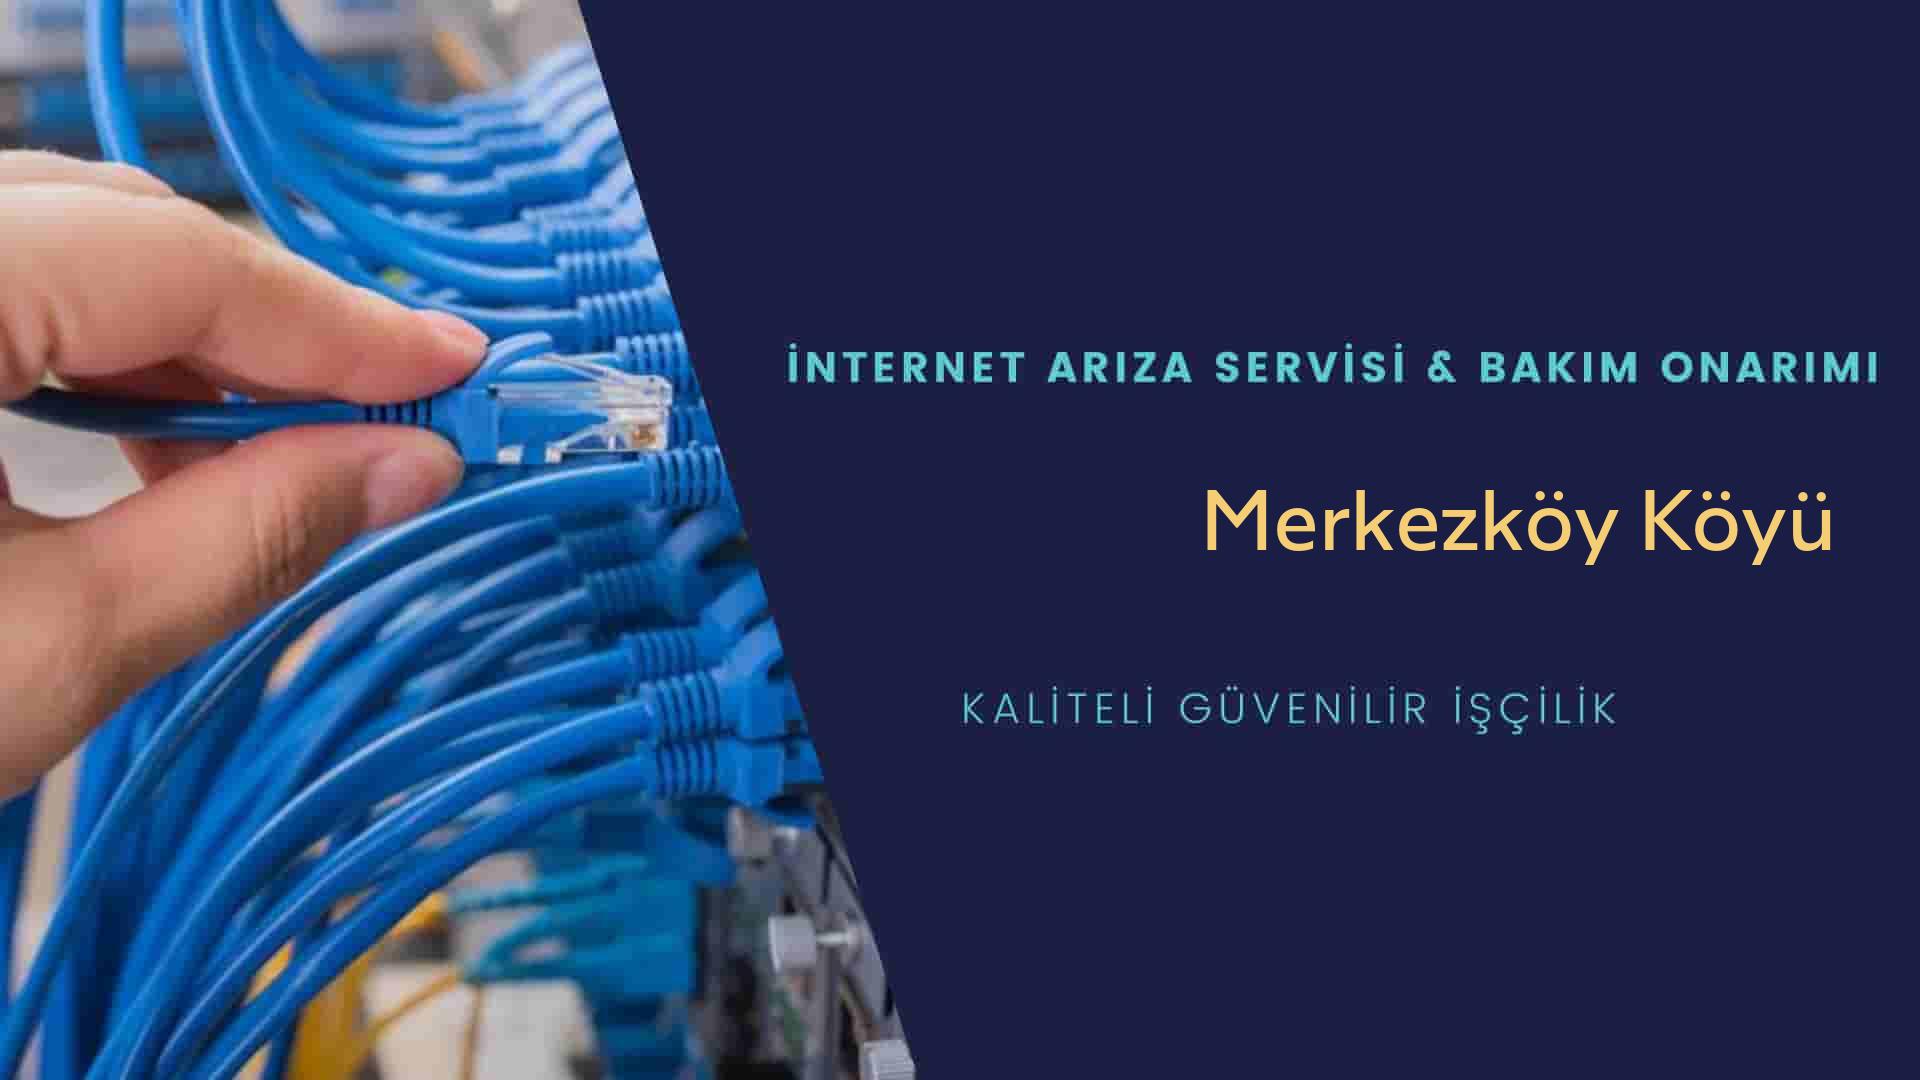 Merkezköy Köyü internet kablosu çekimi yapan yerler veya elektrikçiler mi? arıyorsunuz doğru yerdesiniz o zaman sizlere 7/24 yardımcı olacak profesyonel ustalarımız bir telefon kadar yakındır size.